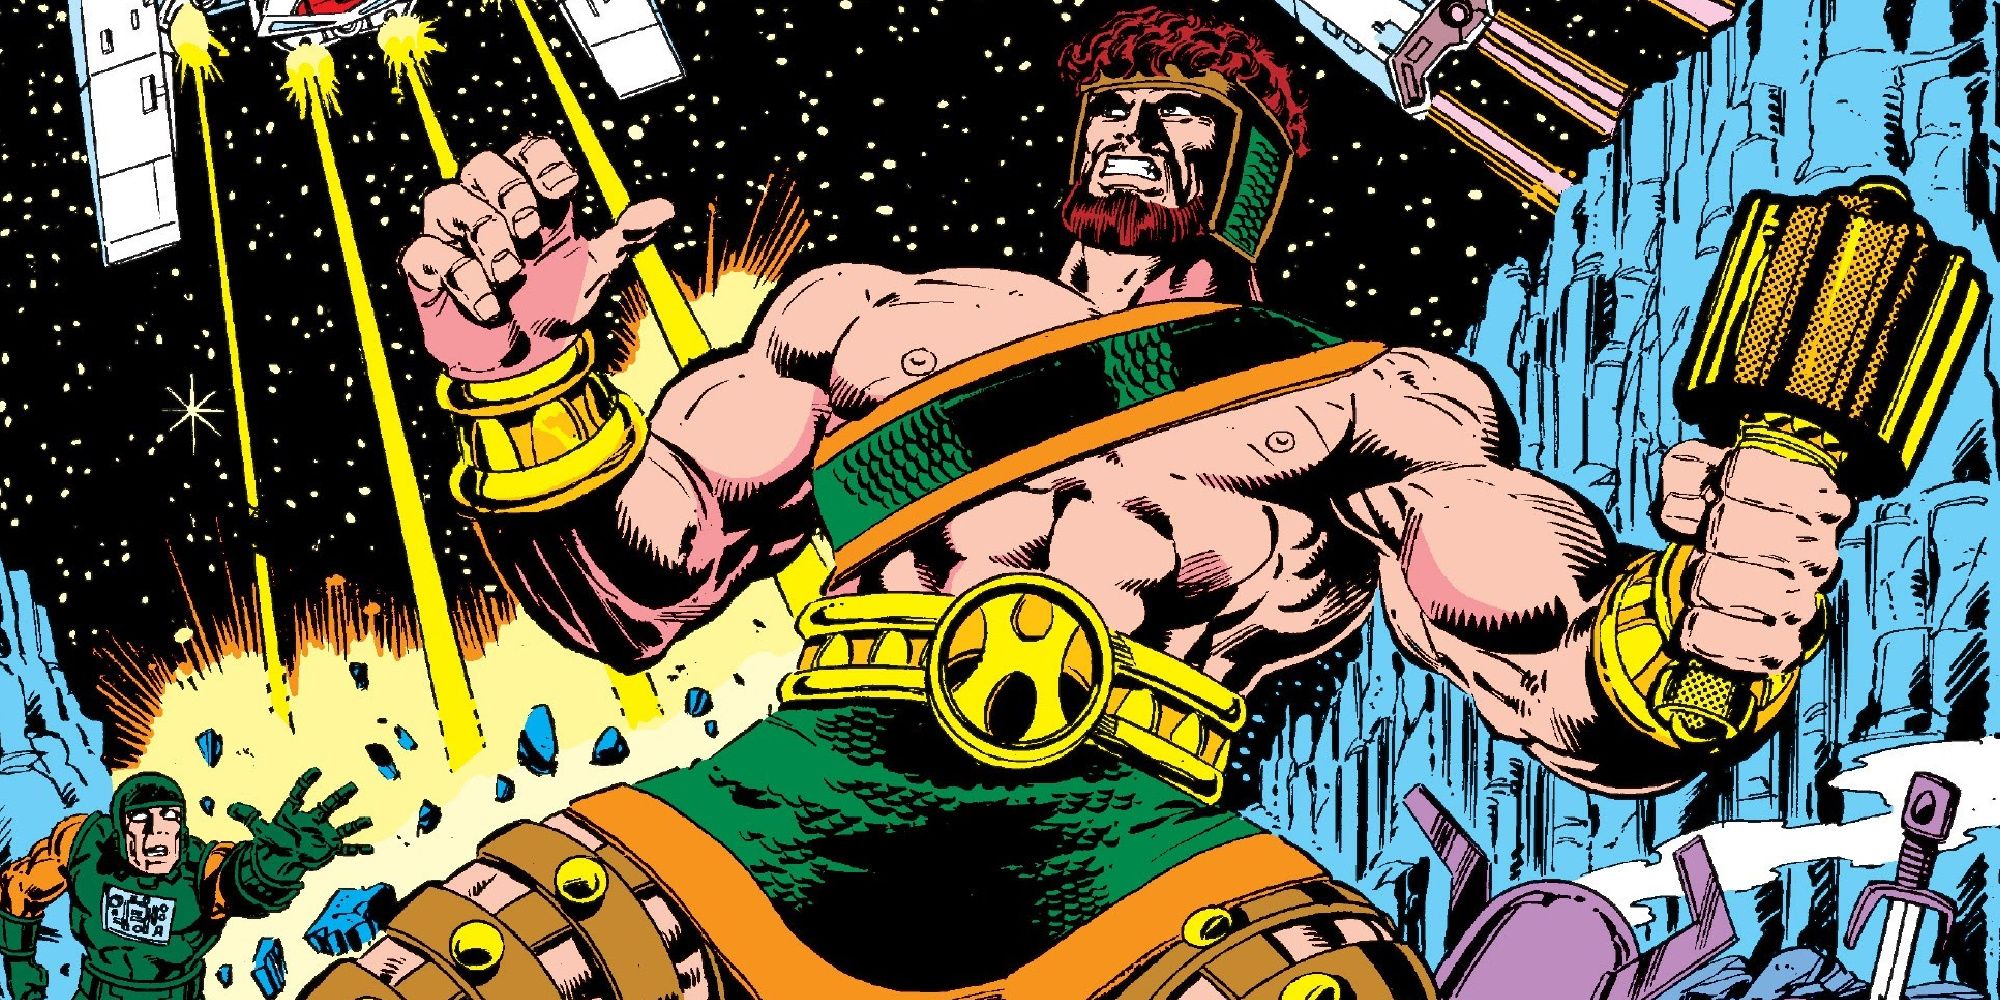 Hercules fights aliens in Marvel Comics.